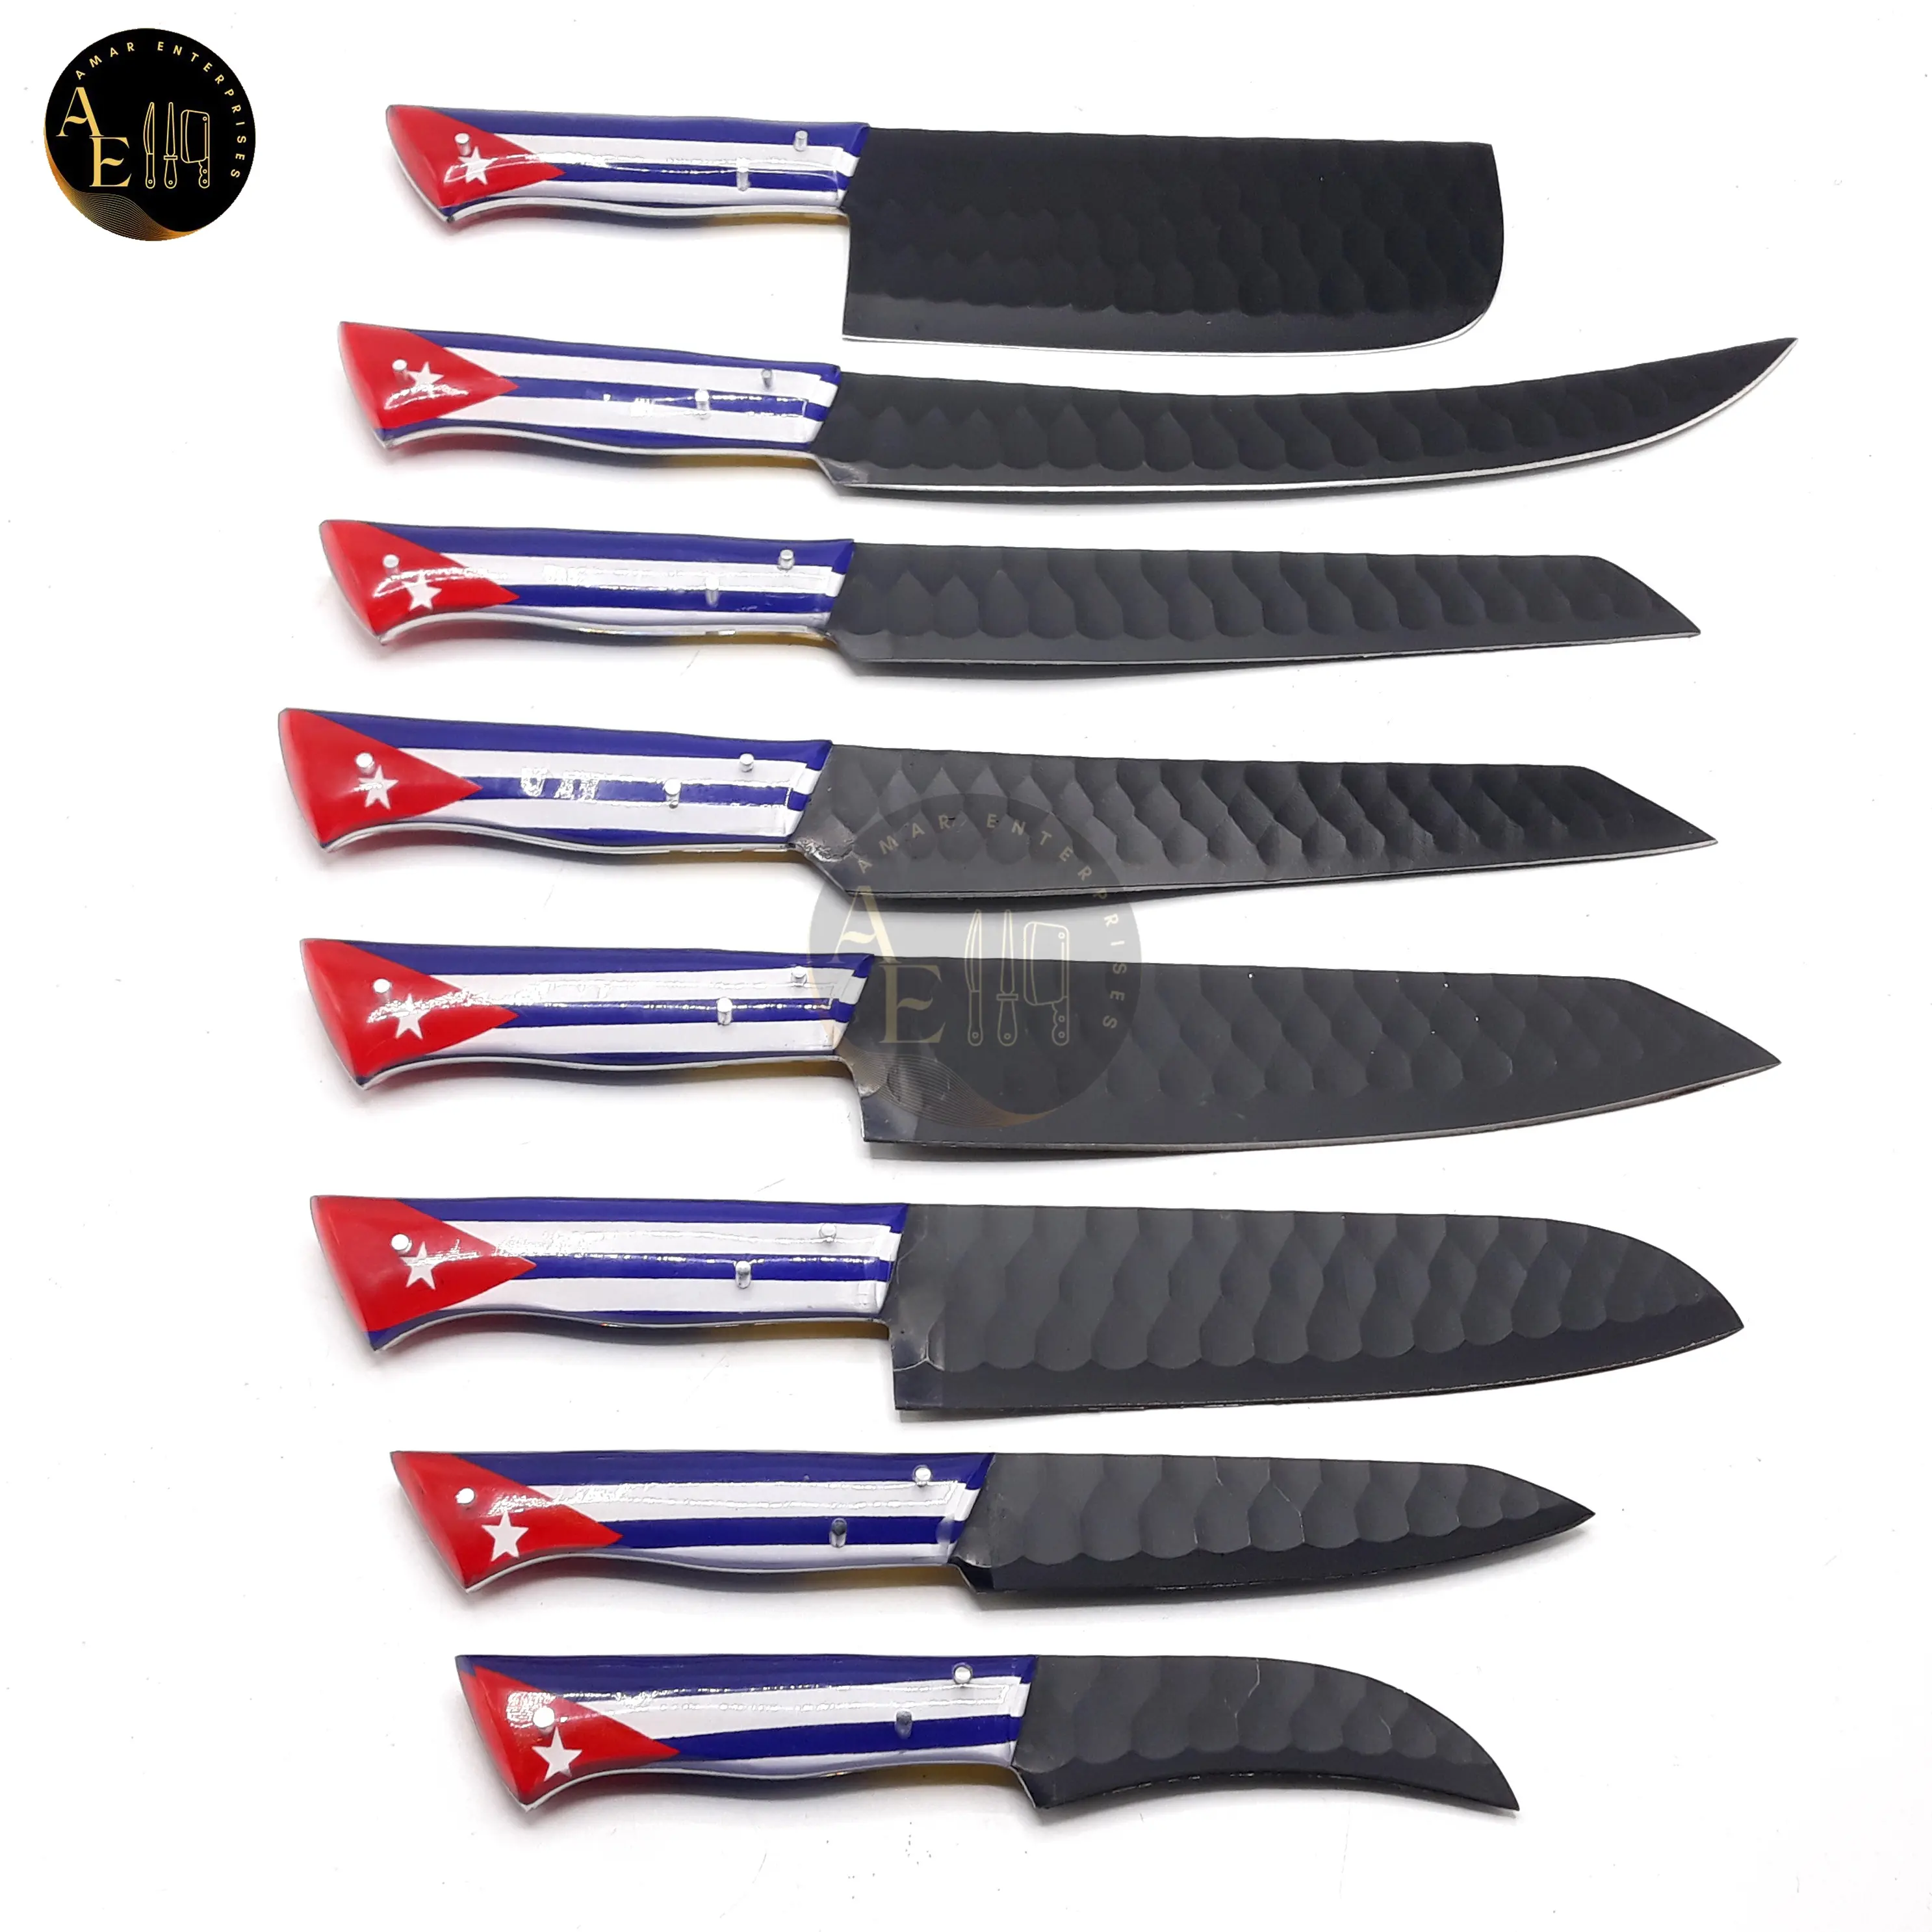 Juego de cuchillos de cocina de 9 piezas con cuchillas de revestimiento negro de acero D2 y asas de bandera de Cuba con el kit de rollo de cuero de piel de vaca pura